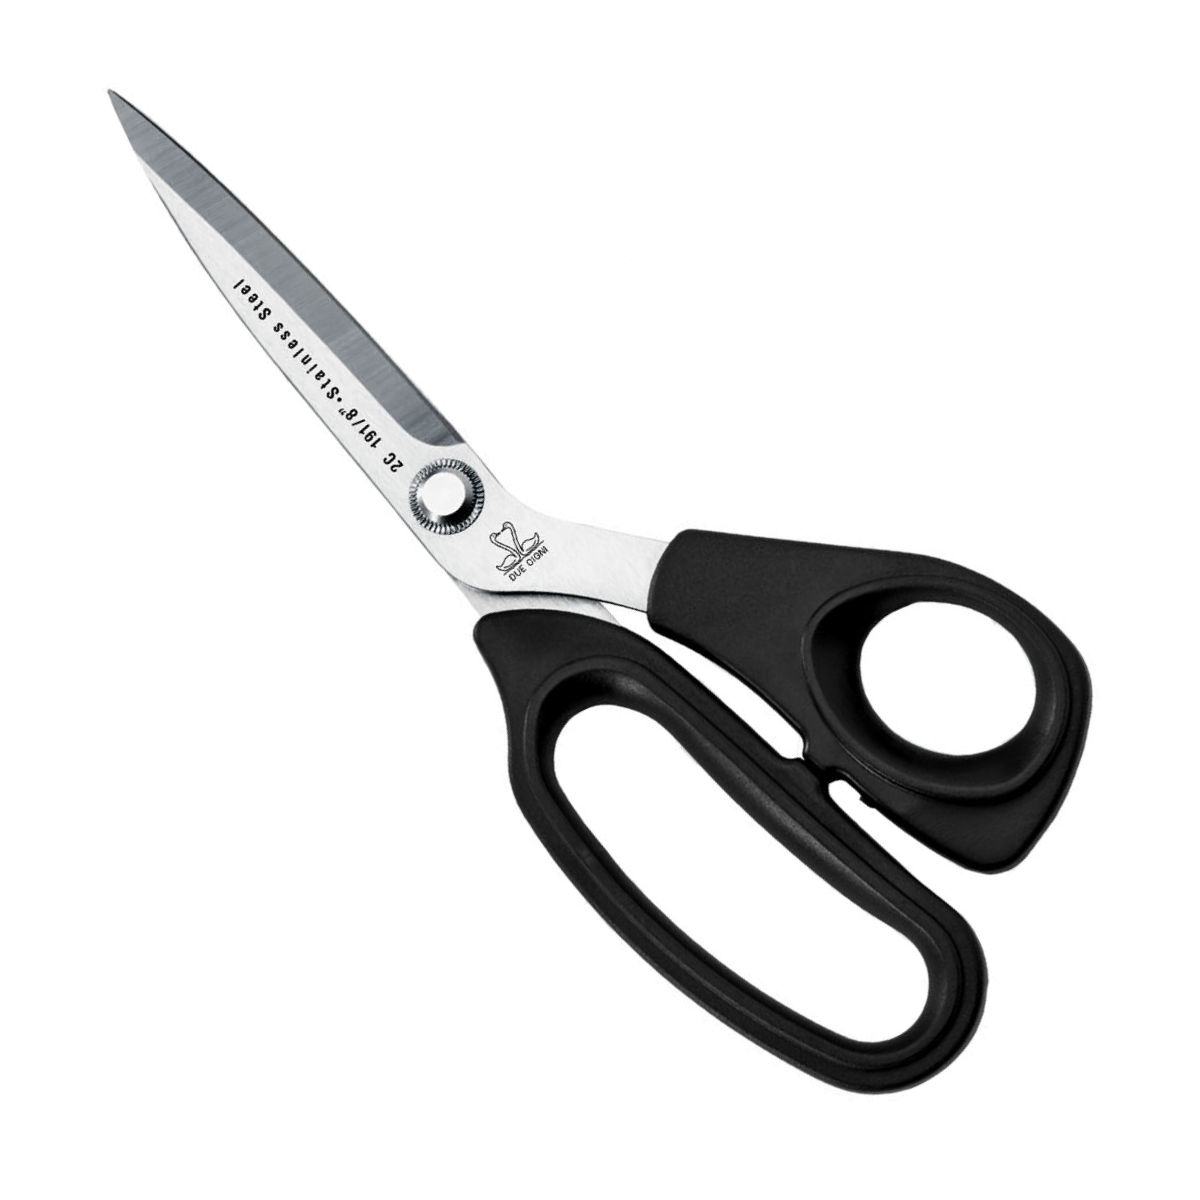 8 Inch Tailoring Scissors